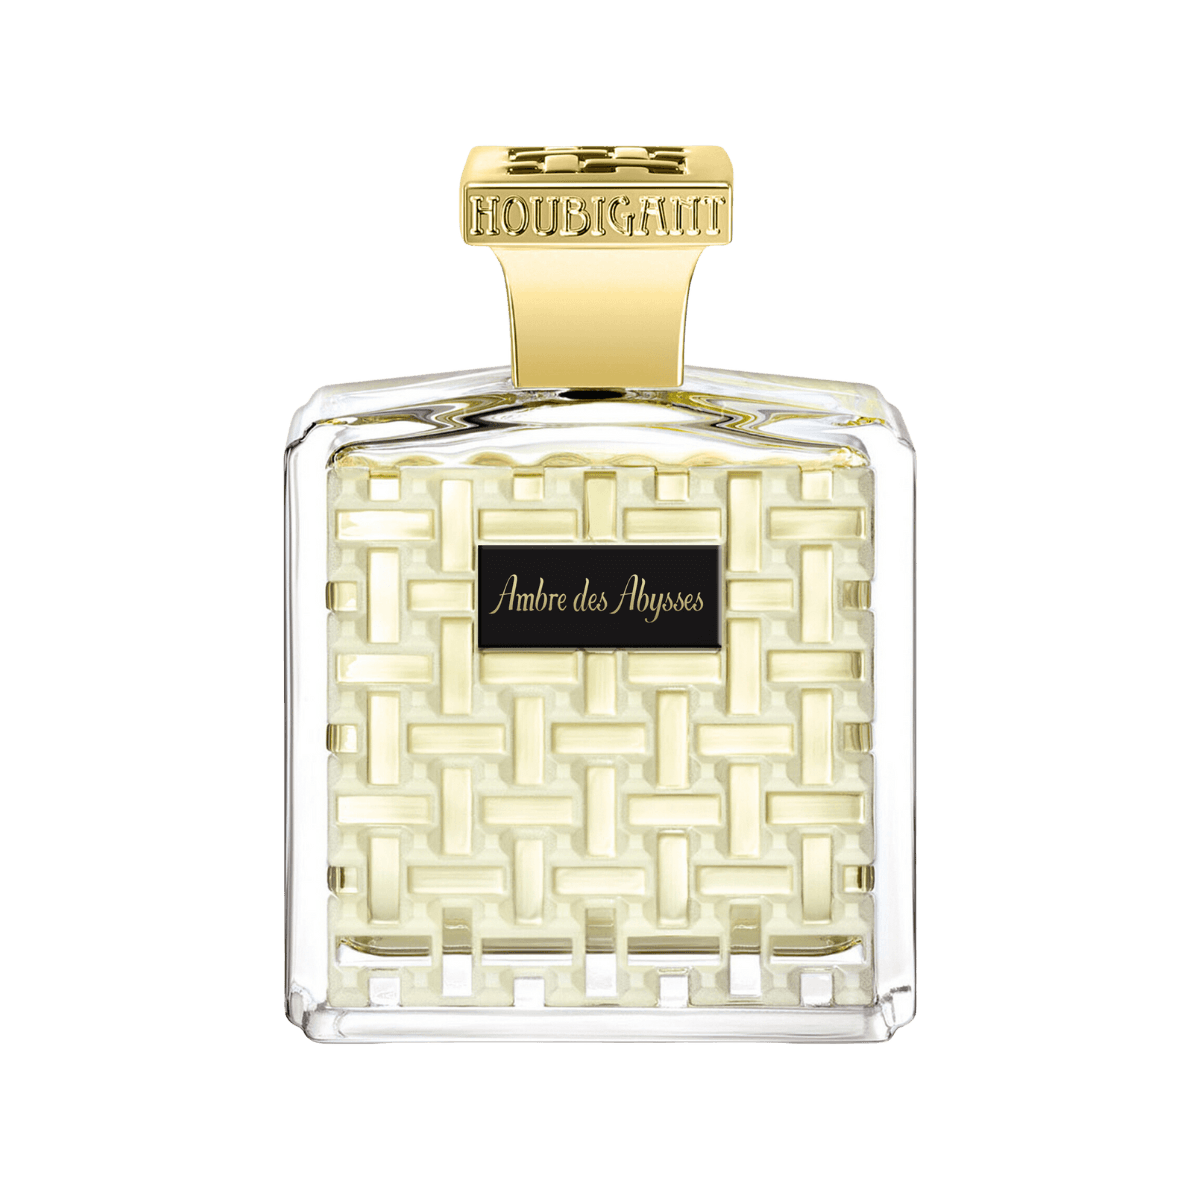 Image of Ambre des Abysses eau de parfum by the perfume brand Houbigant